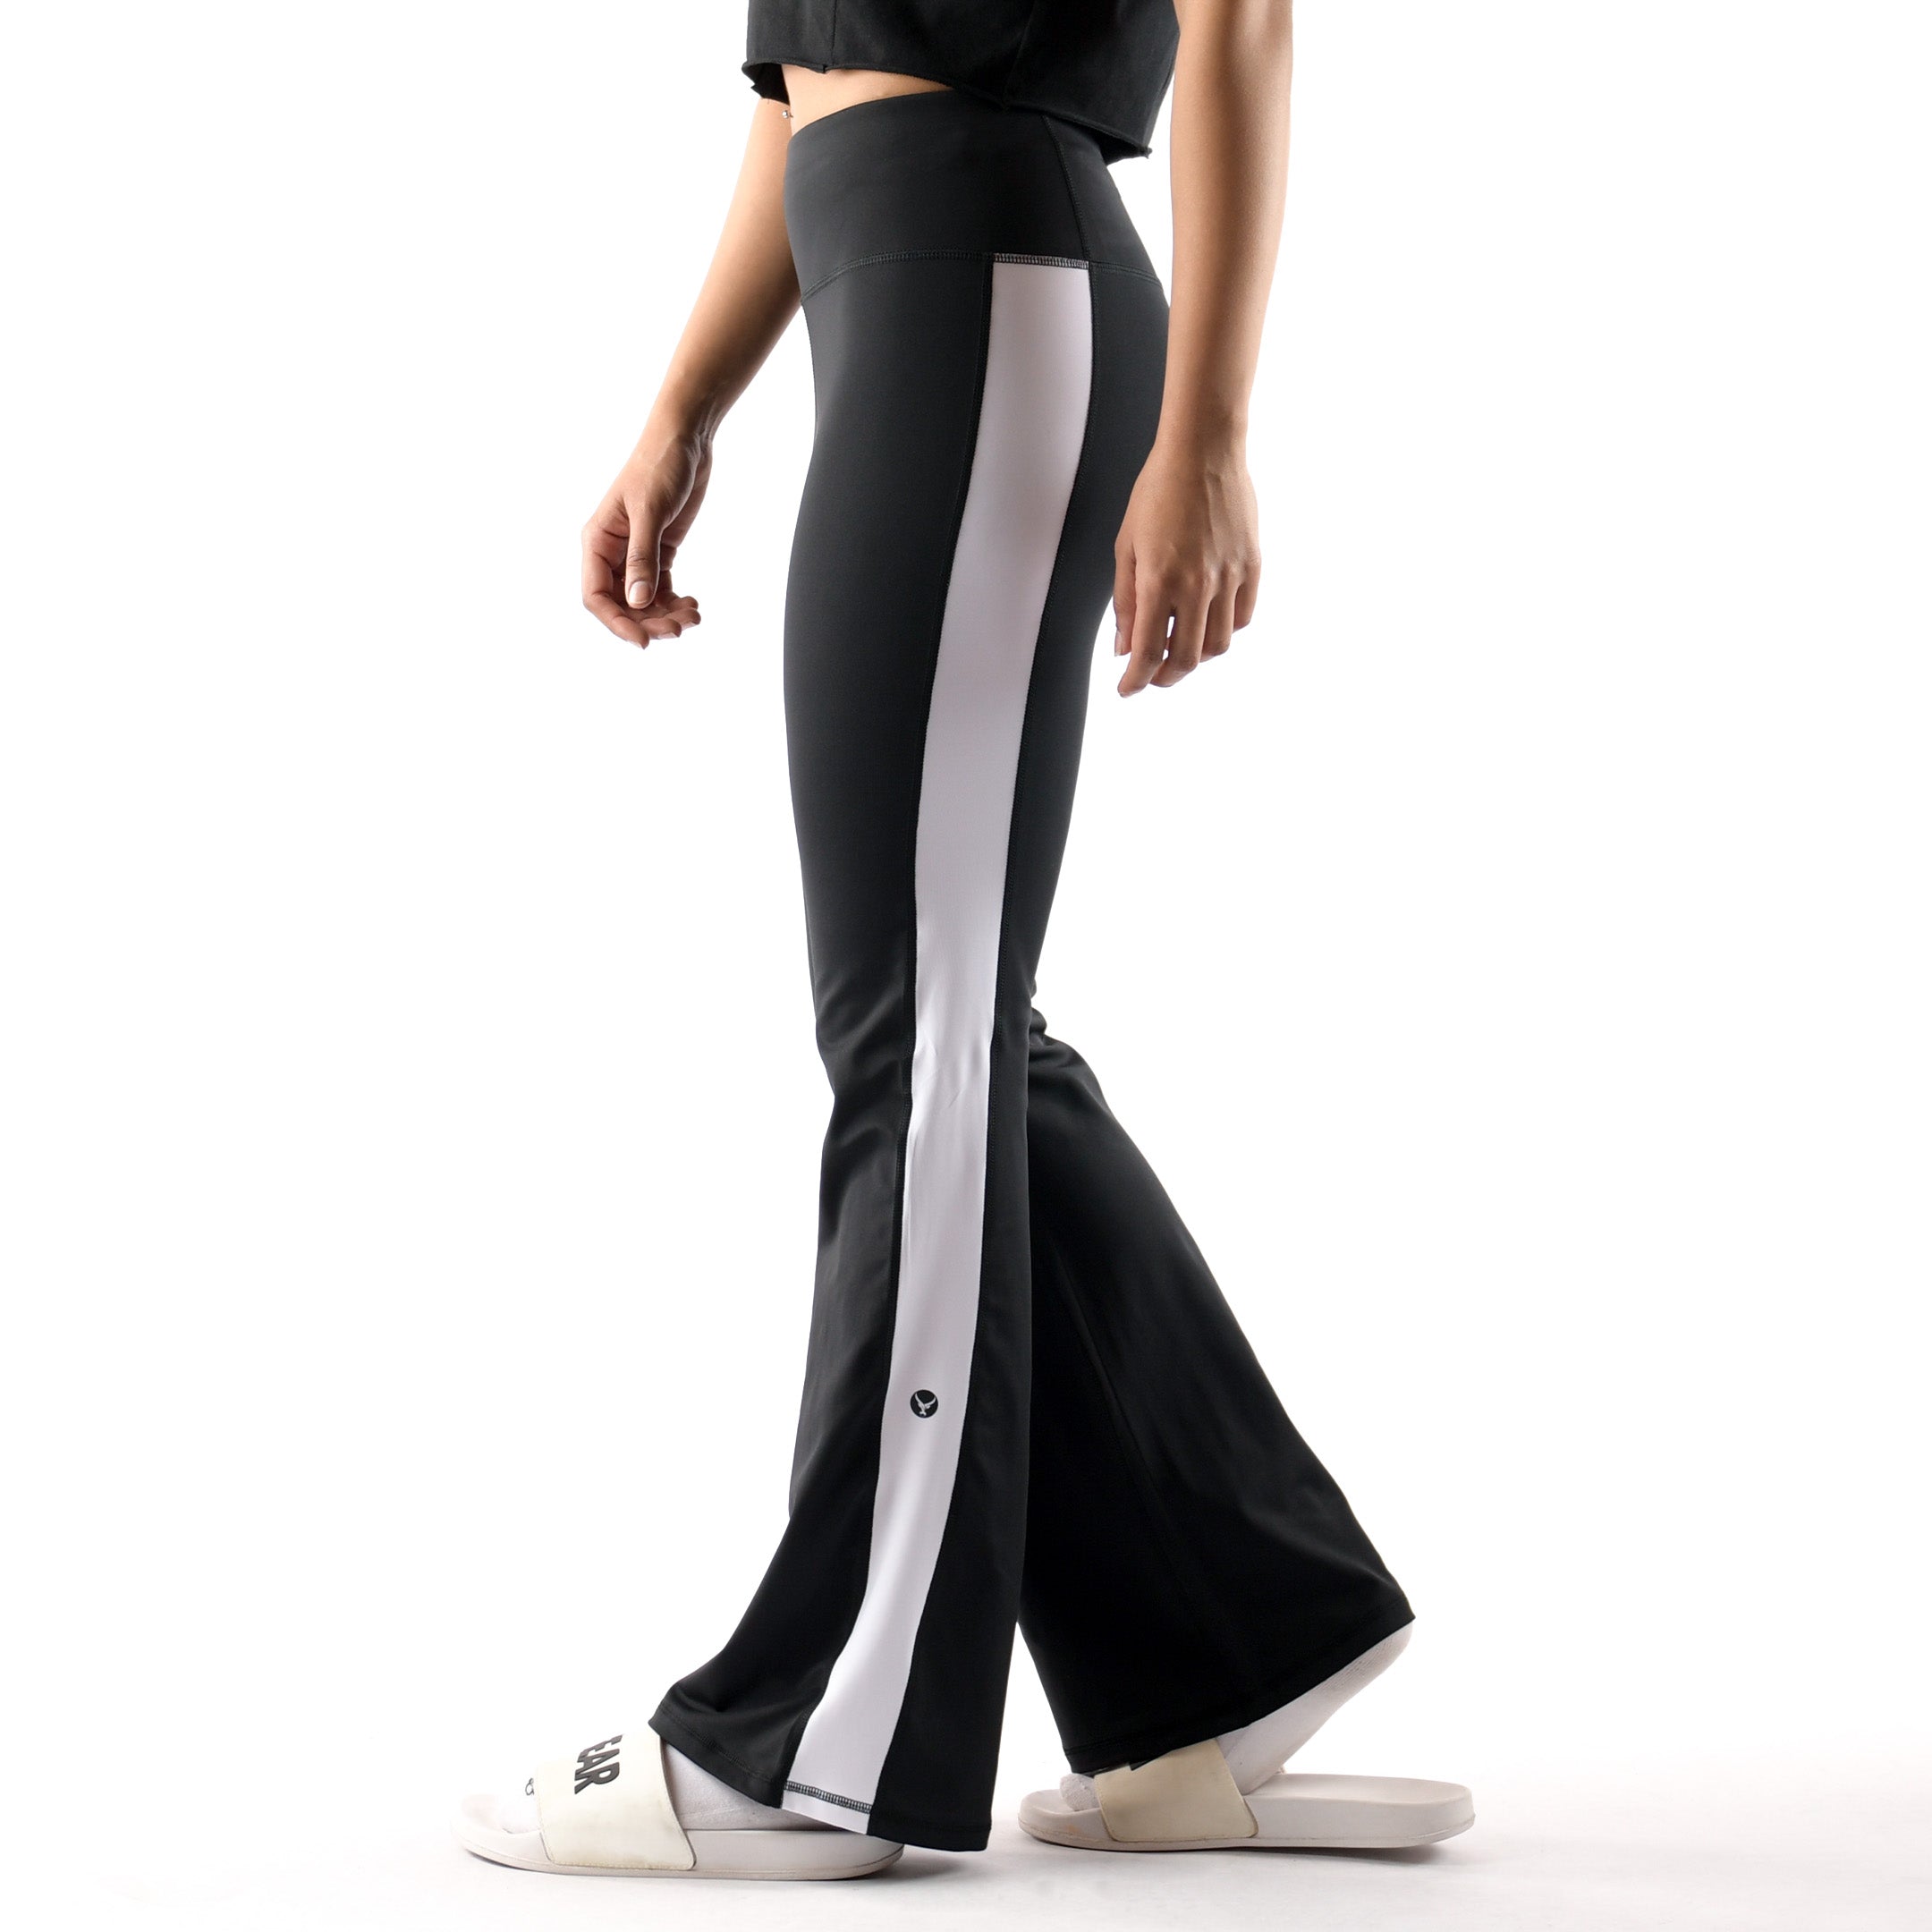 High-Rise Balance Yoga Pants - IRONGEAR Fitness - WOMEN BOTTOMS